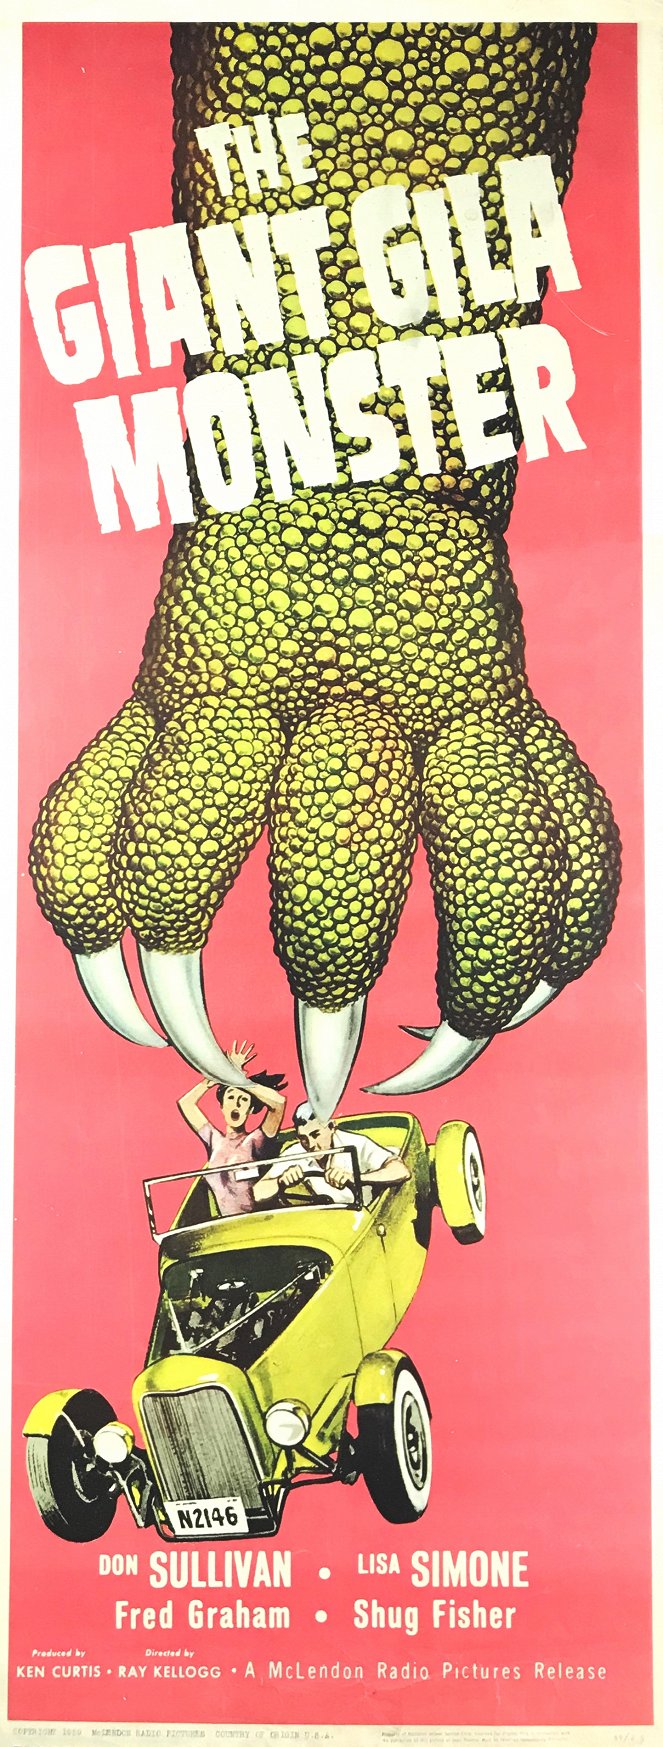 The Giant Gila Monster - Plakate